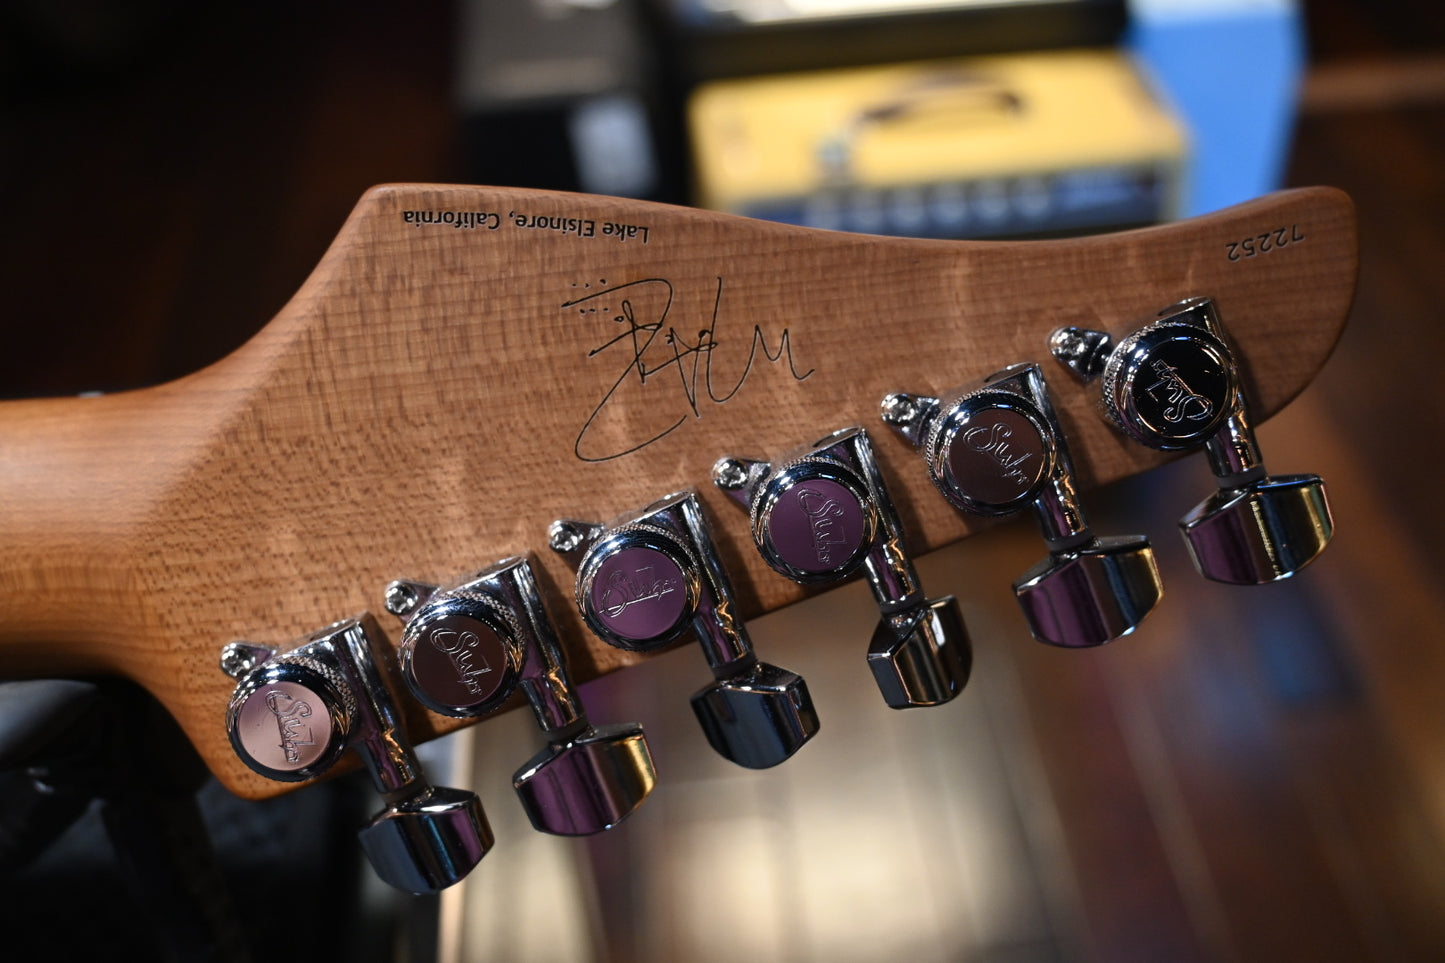 Suhr Mateus Asato Signature Classic S Antique - Shell Pink Guitar #2252 - Danville Music